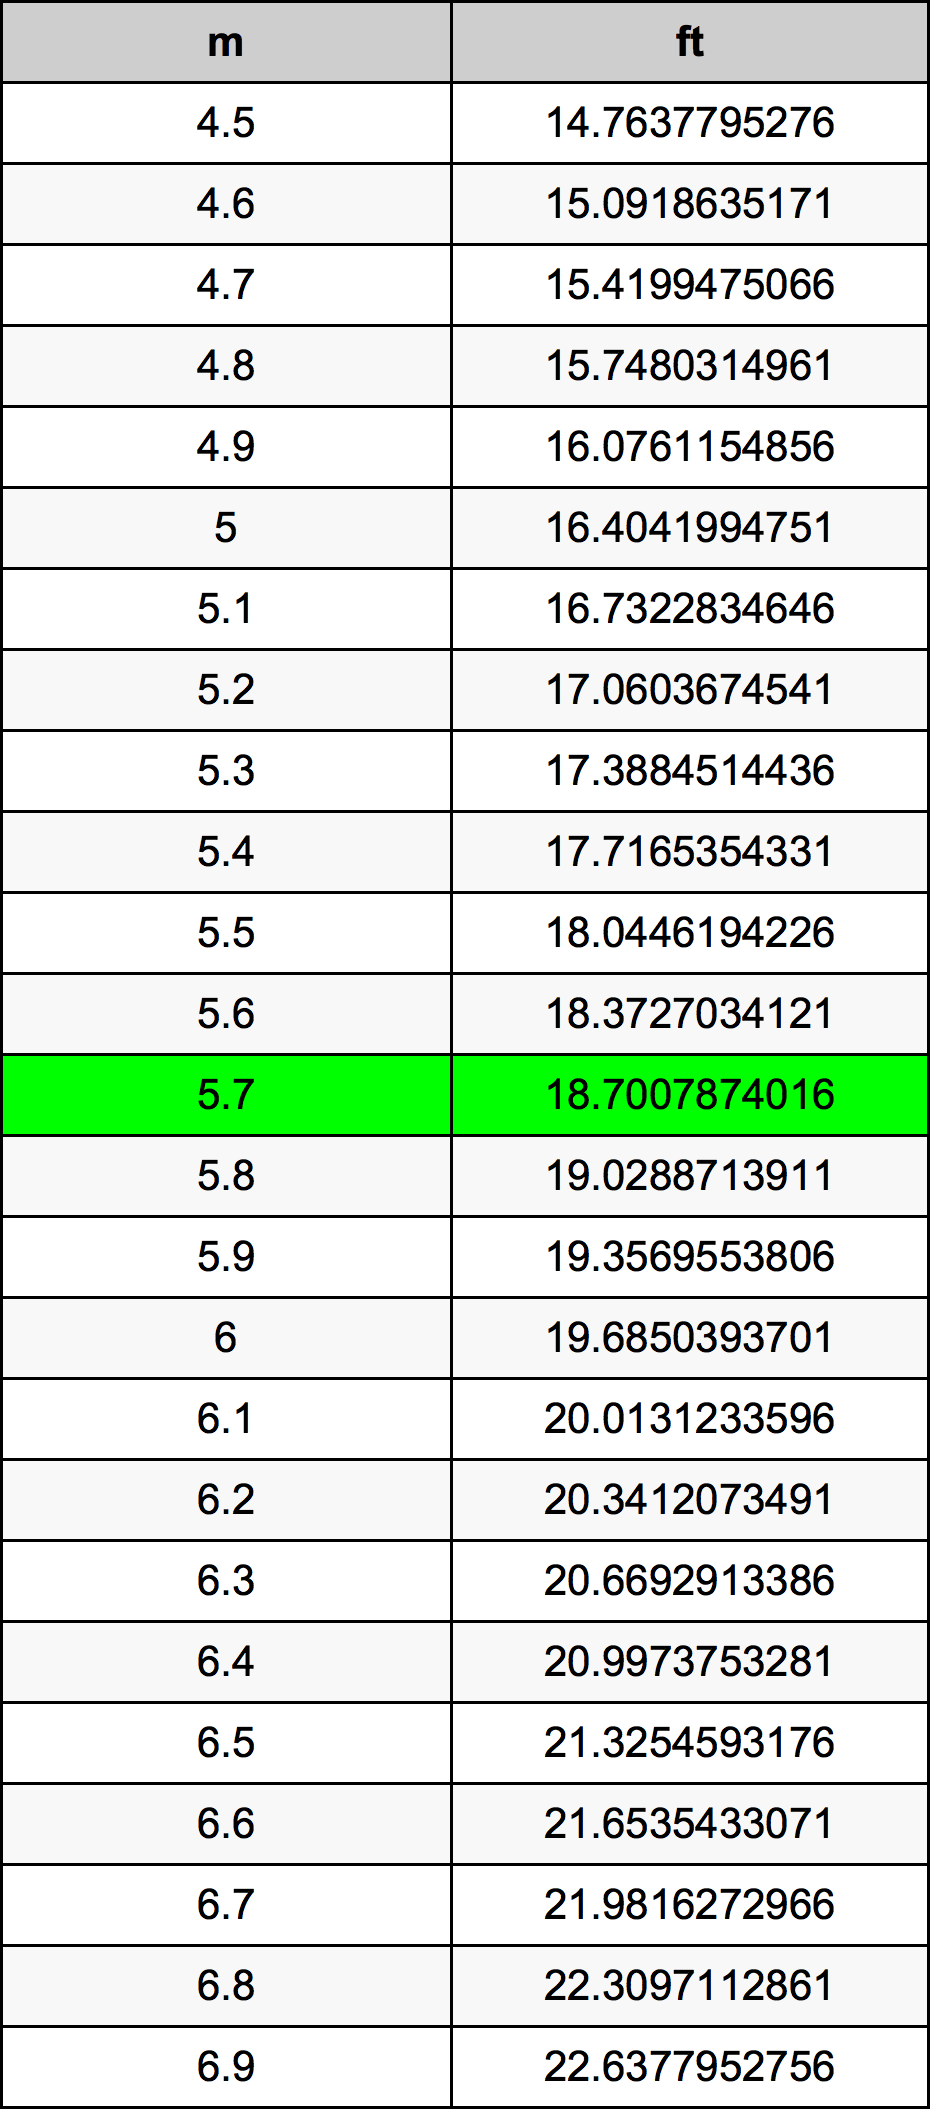 5.7 Metru tabelul de conversie